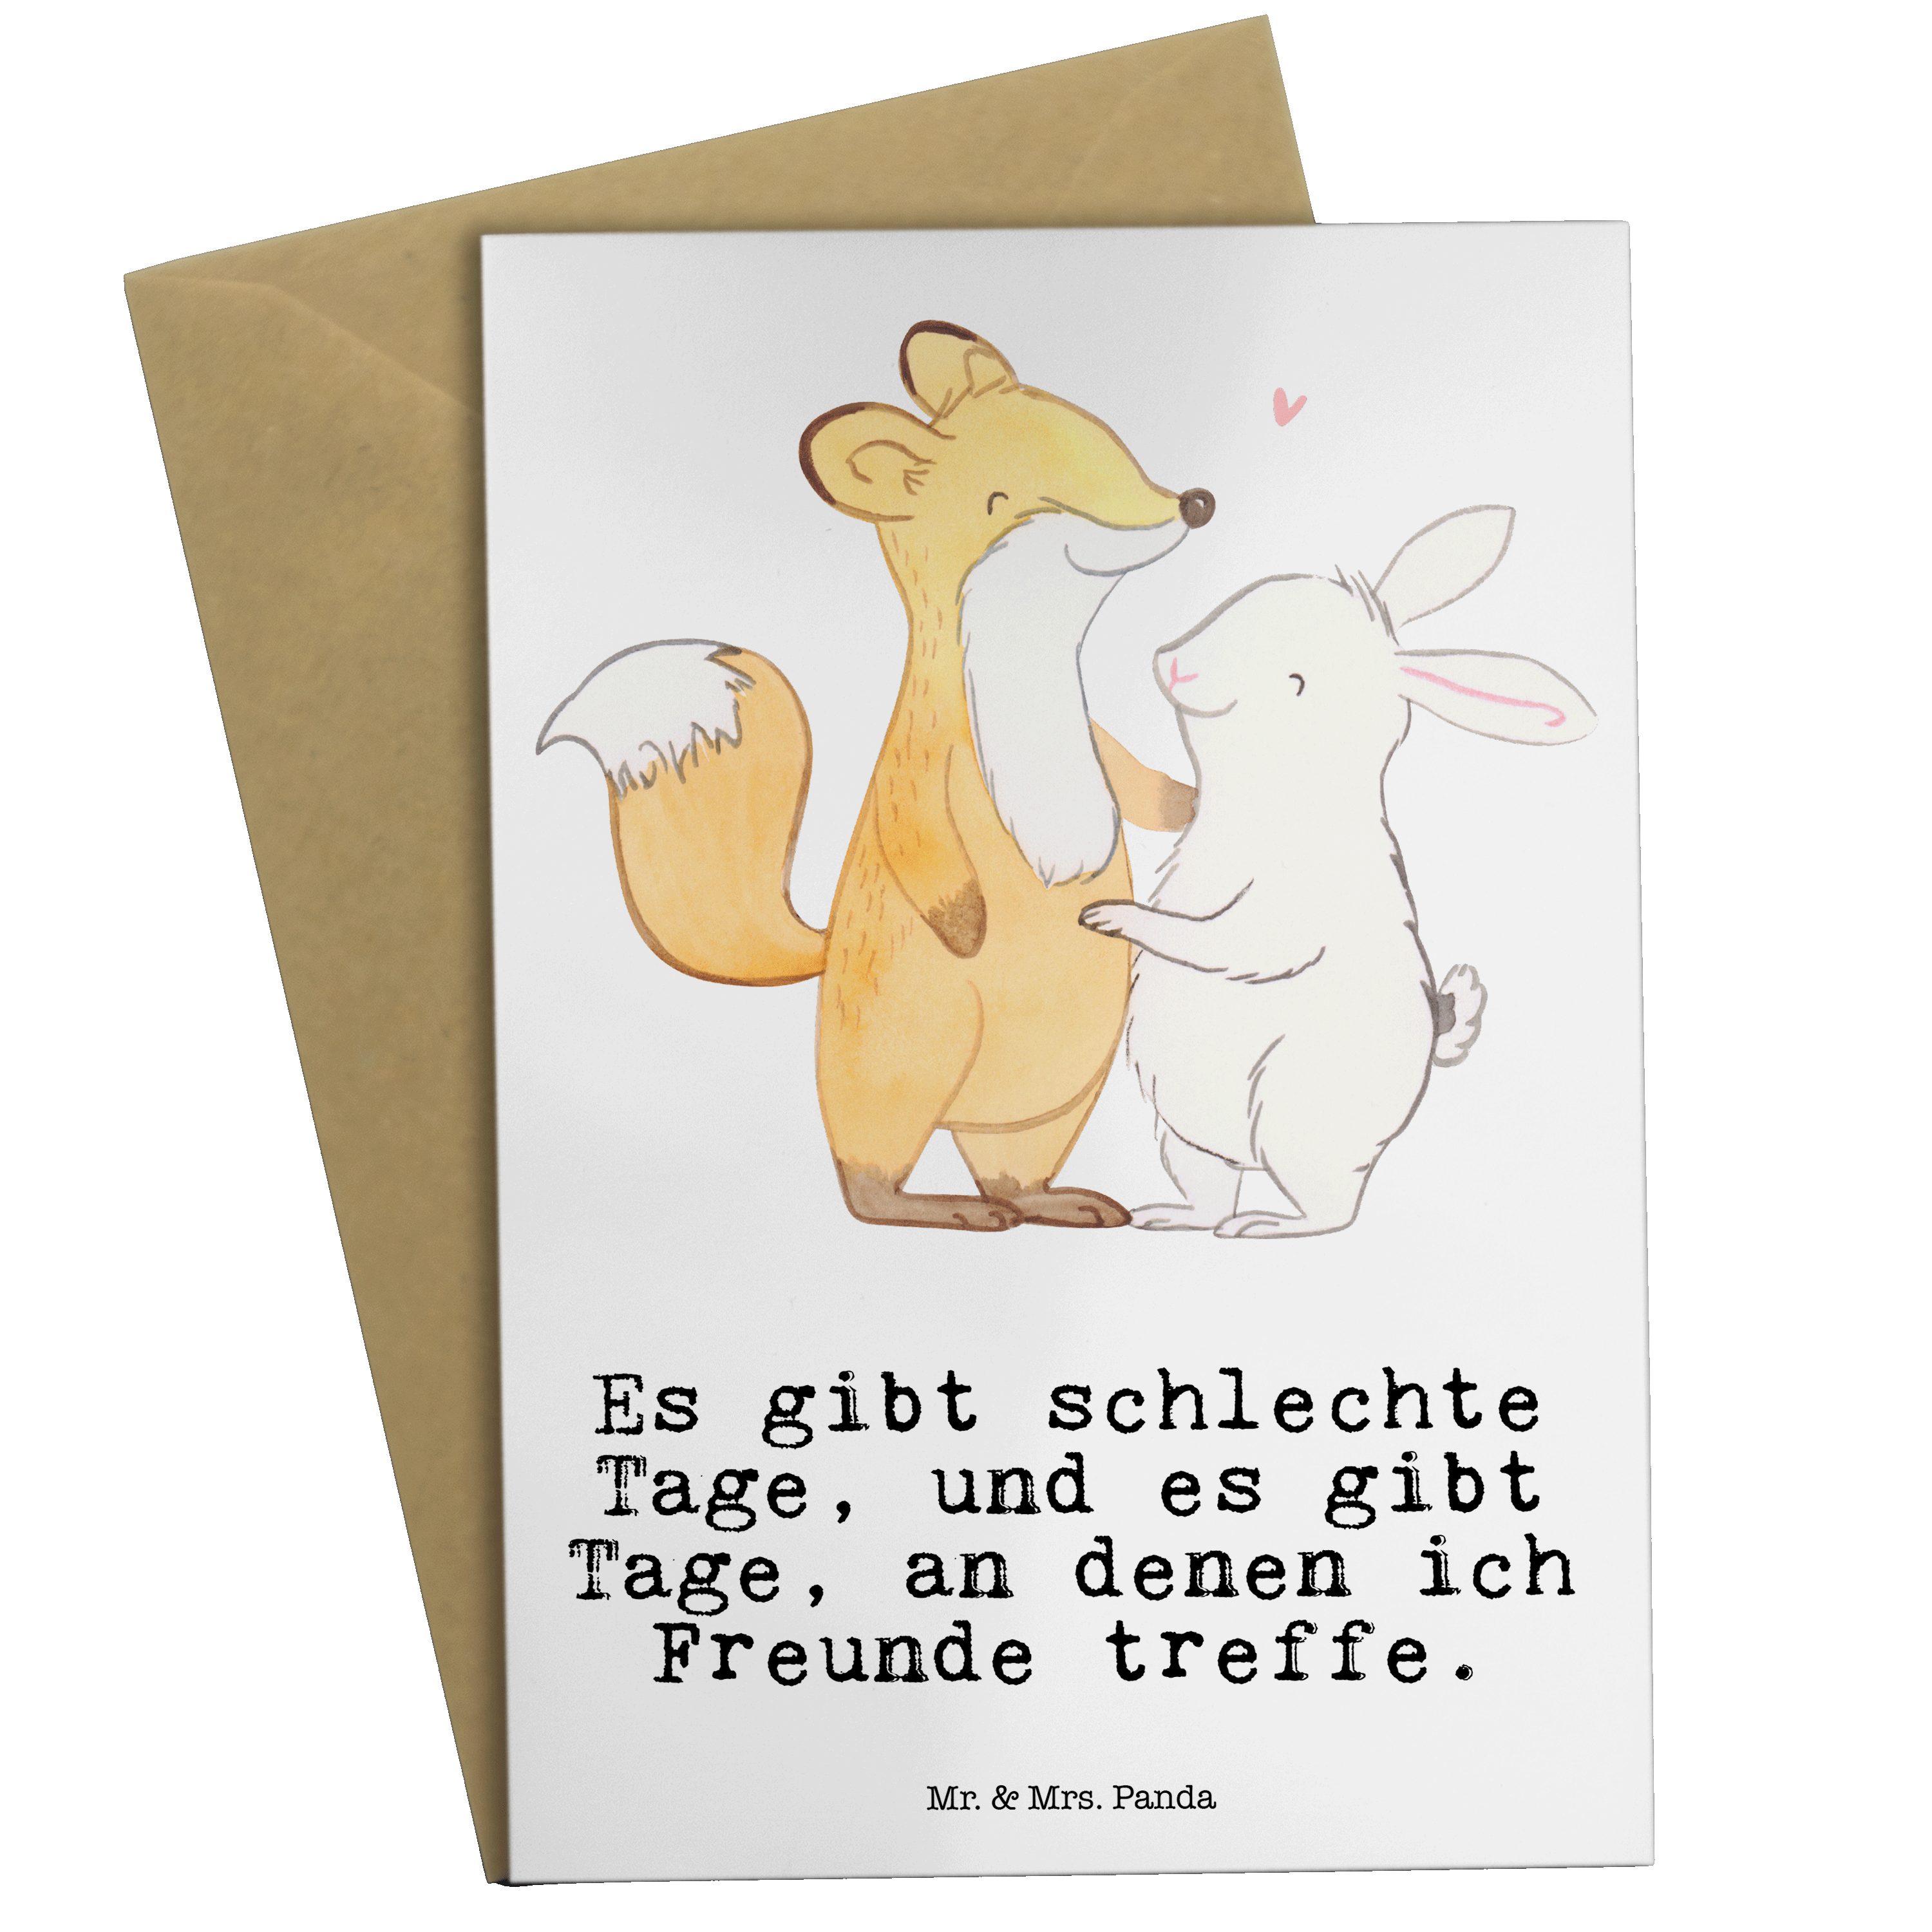 Mr. & Mrs. Panda Grußkarte Fuchs Hase Freunde treffen Tage - Weiß - Geschenk, Auszeichnung, Sche